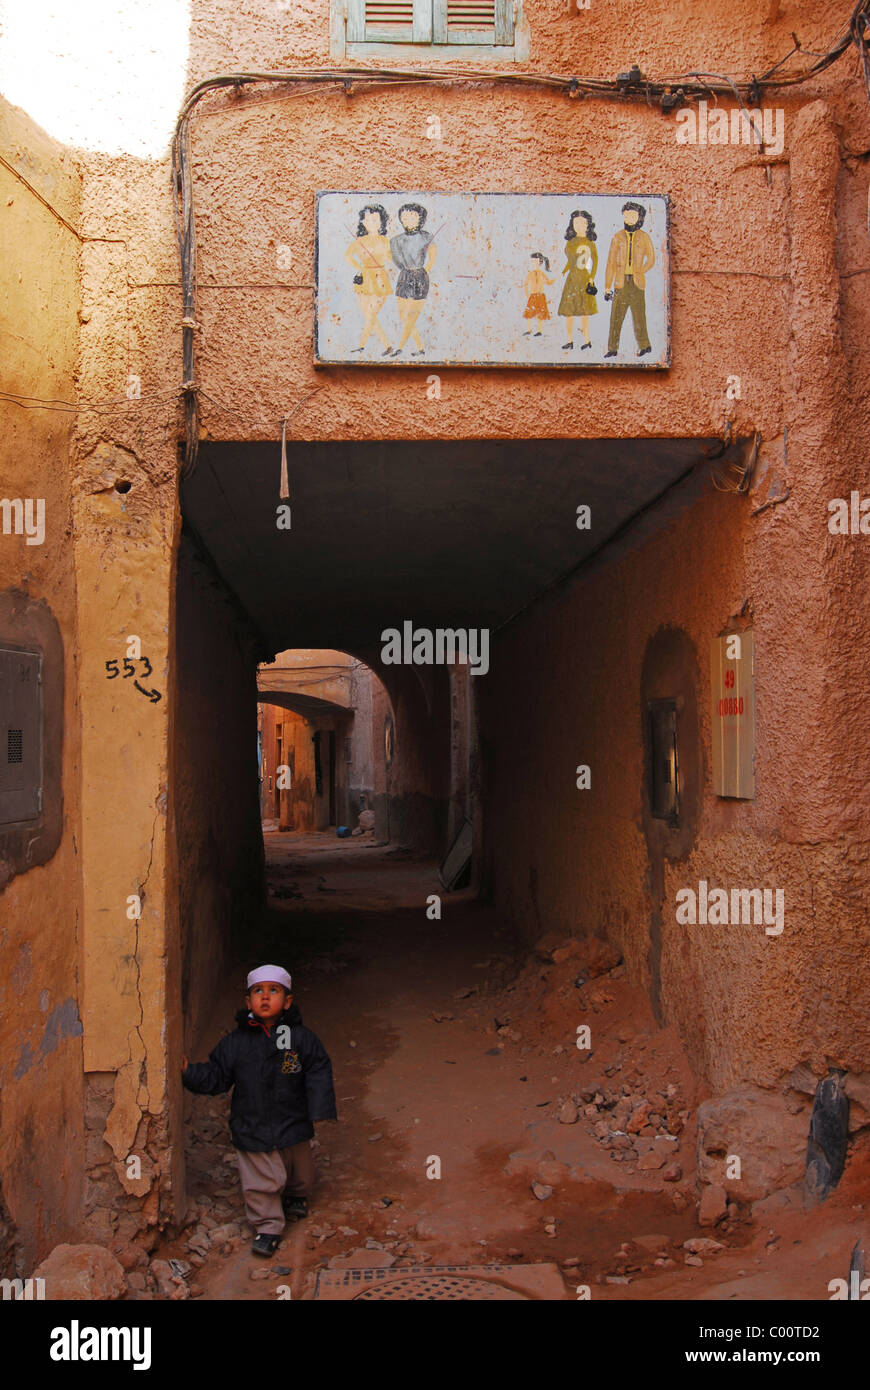 Algeria, Ghardaia, vista di un ragazzo che sta alla porta, guardando verso l'alto mentre un telaio verniciato visualizzati sulla parete al di sopra della porta Foto Stock